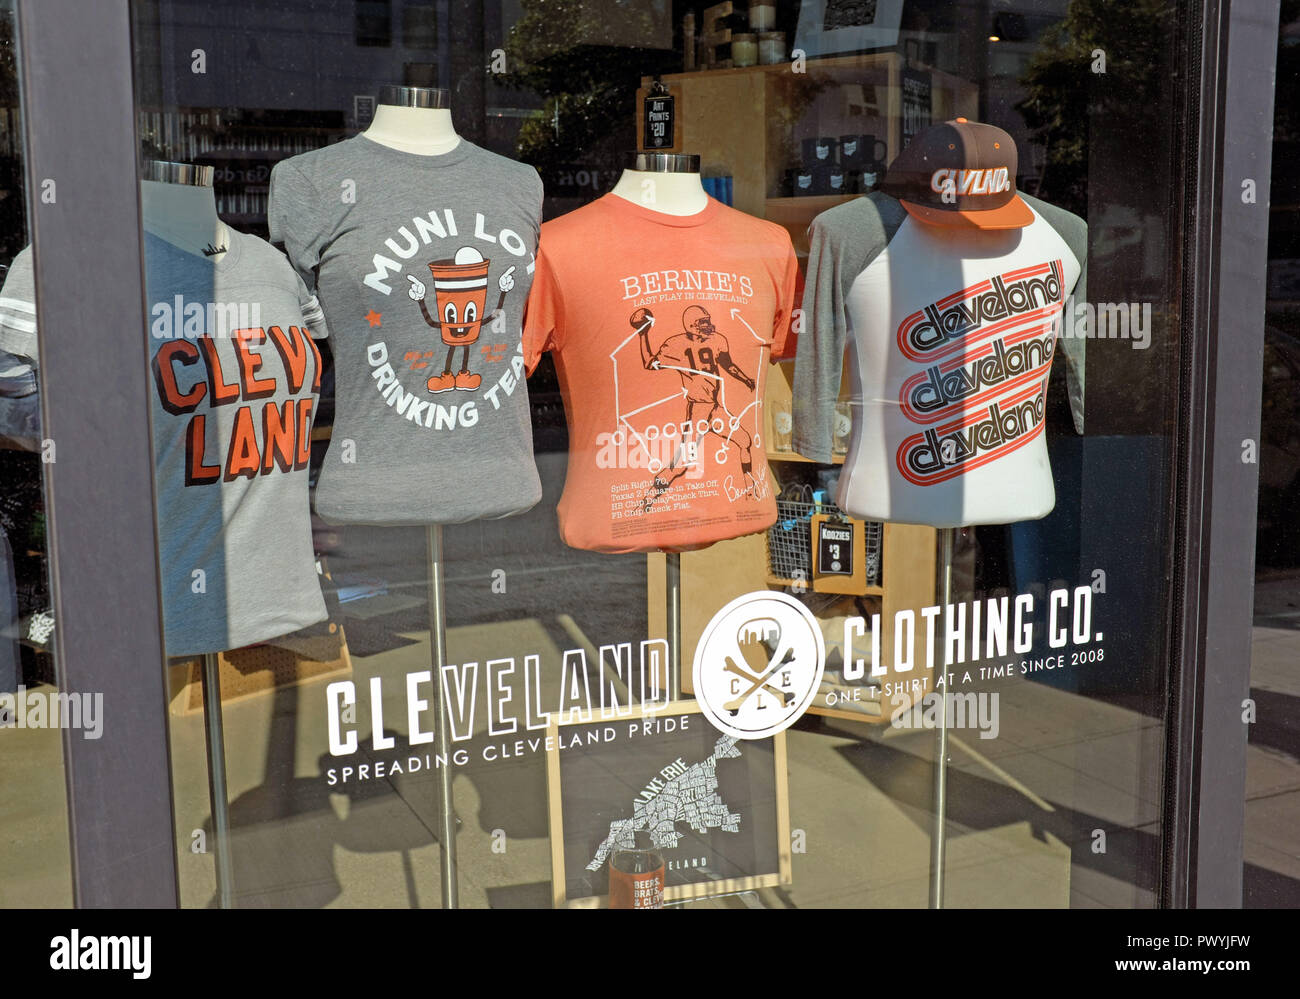 Une fenêtre s'affiche accompagnée d'Euclid Avenue, à Cleveland, Ohio montre t-shirts vantant Cleveland Pride par les Cleveland Clothing Company. Banque D'Images